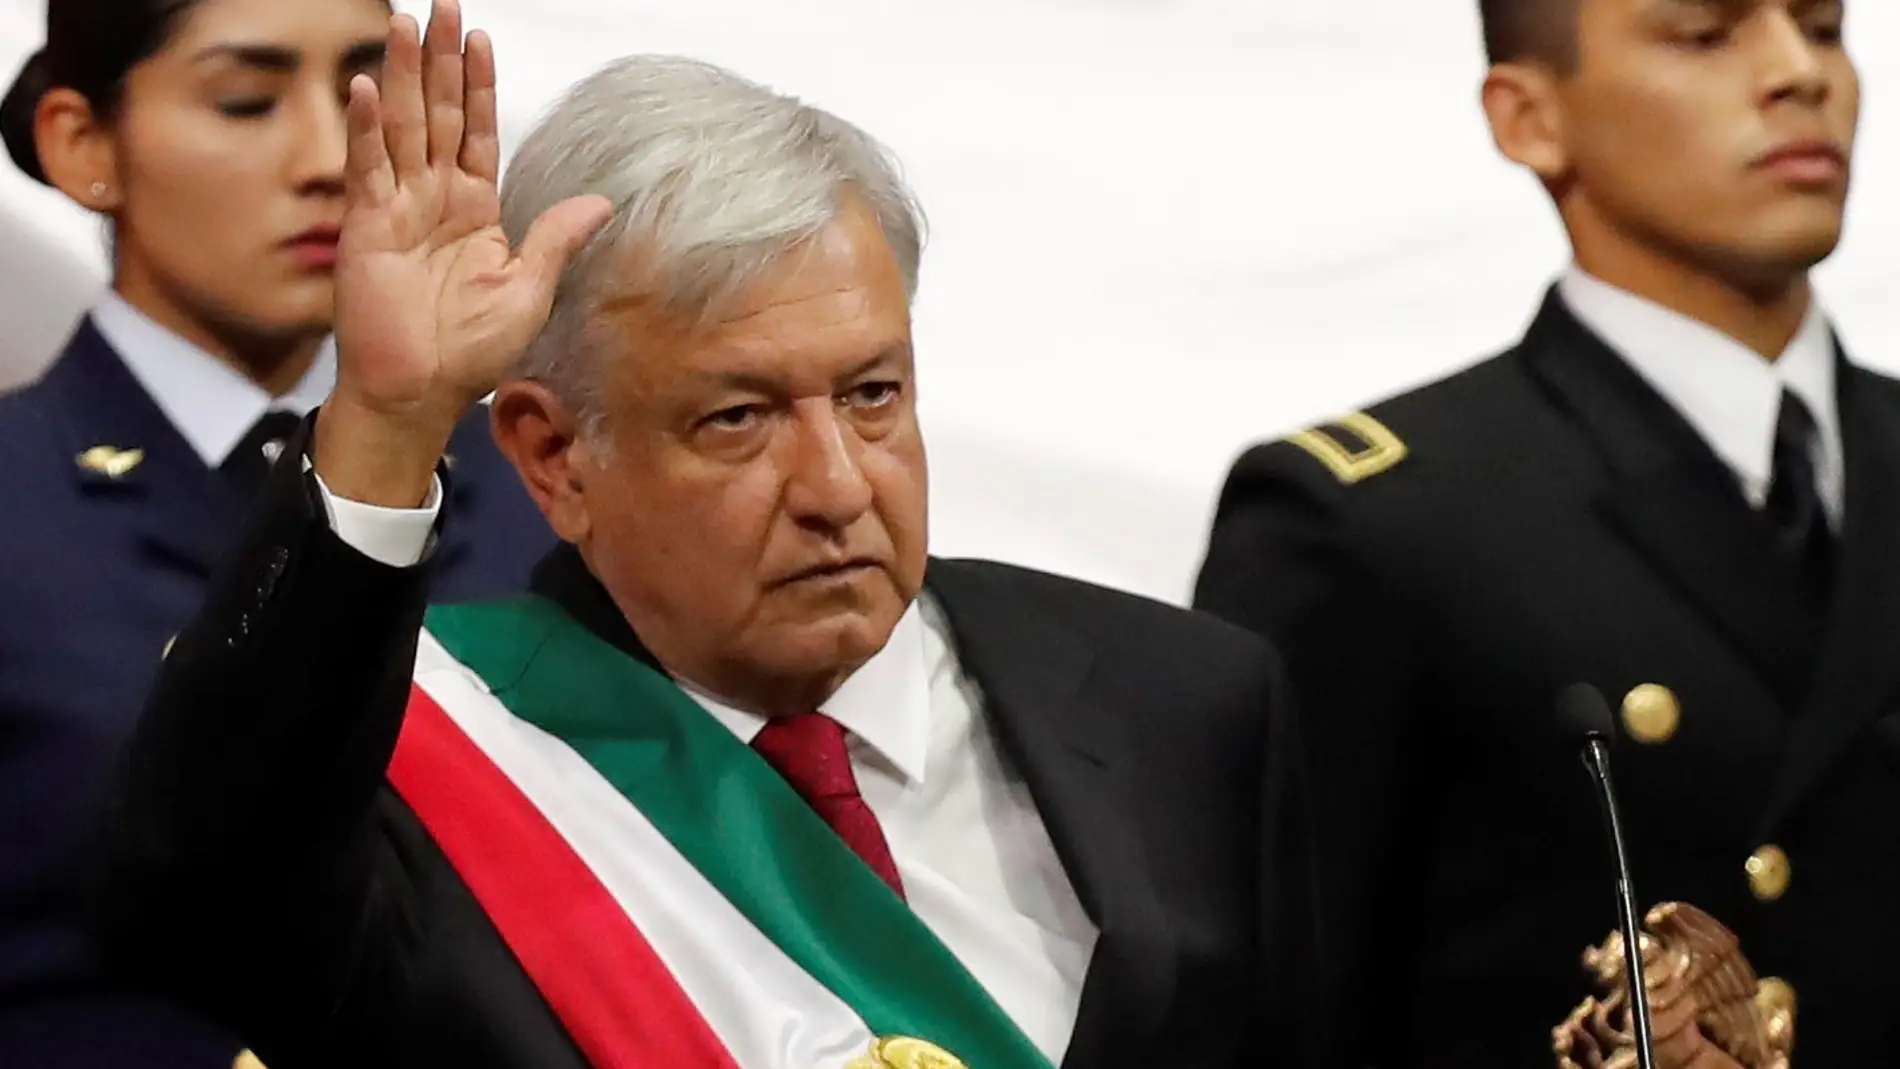 El nuevo presidente de México, Andrés Manuel López Obrador